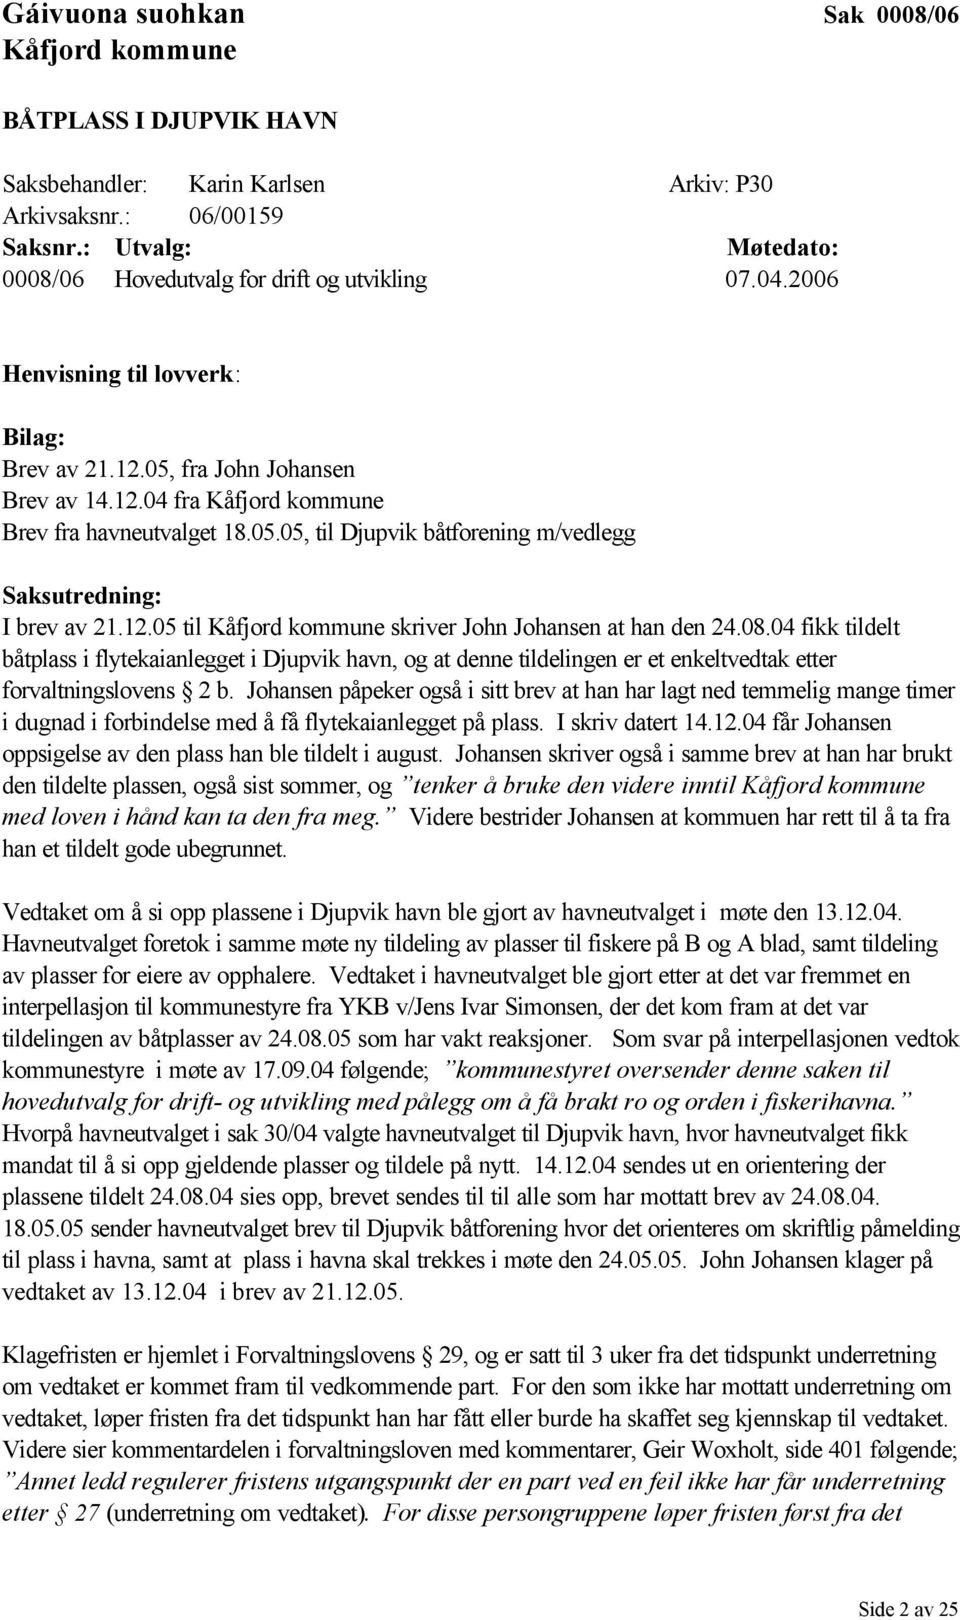 05.05, til Djupvik båtforening m/vedlegg Saksutredning: I brev av 21.12.05 til Kåfjord kommune skriver John Johansen at han den 24.08.